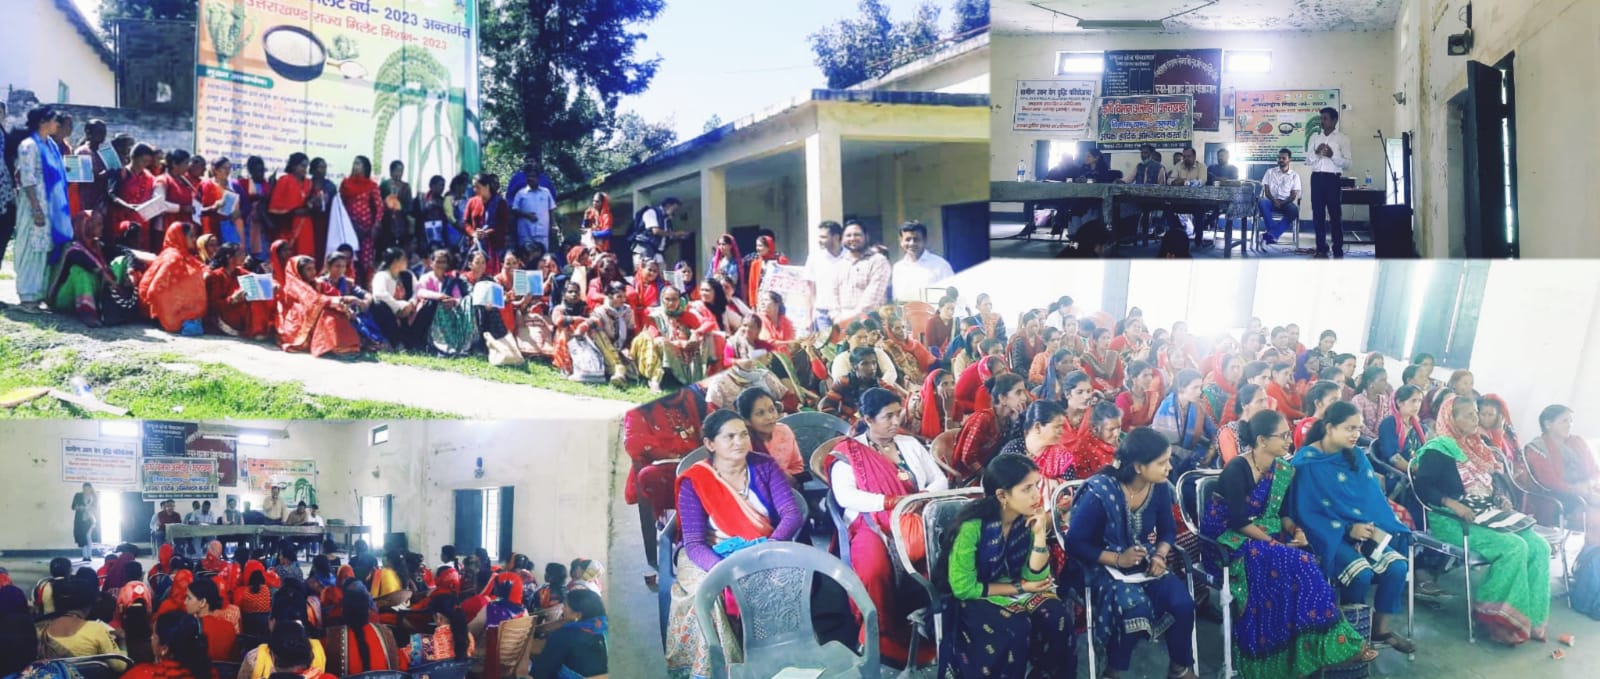 अल्मोड़ा: विकास खण्ड लमगड़ा में अंतर्राष्ट्रीय मिलेट 2023 का किया गया आयोजन